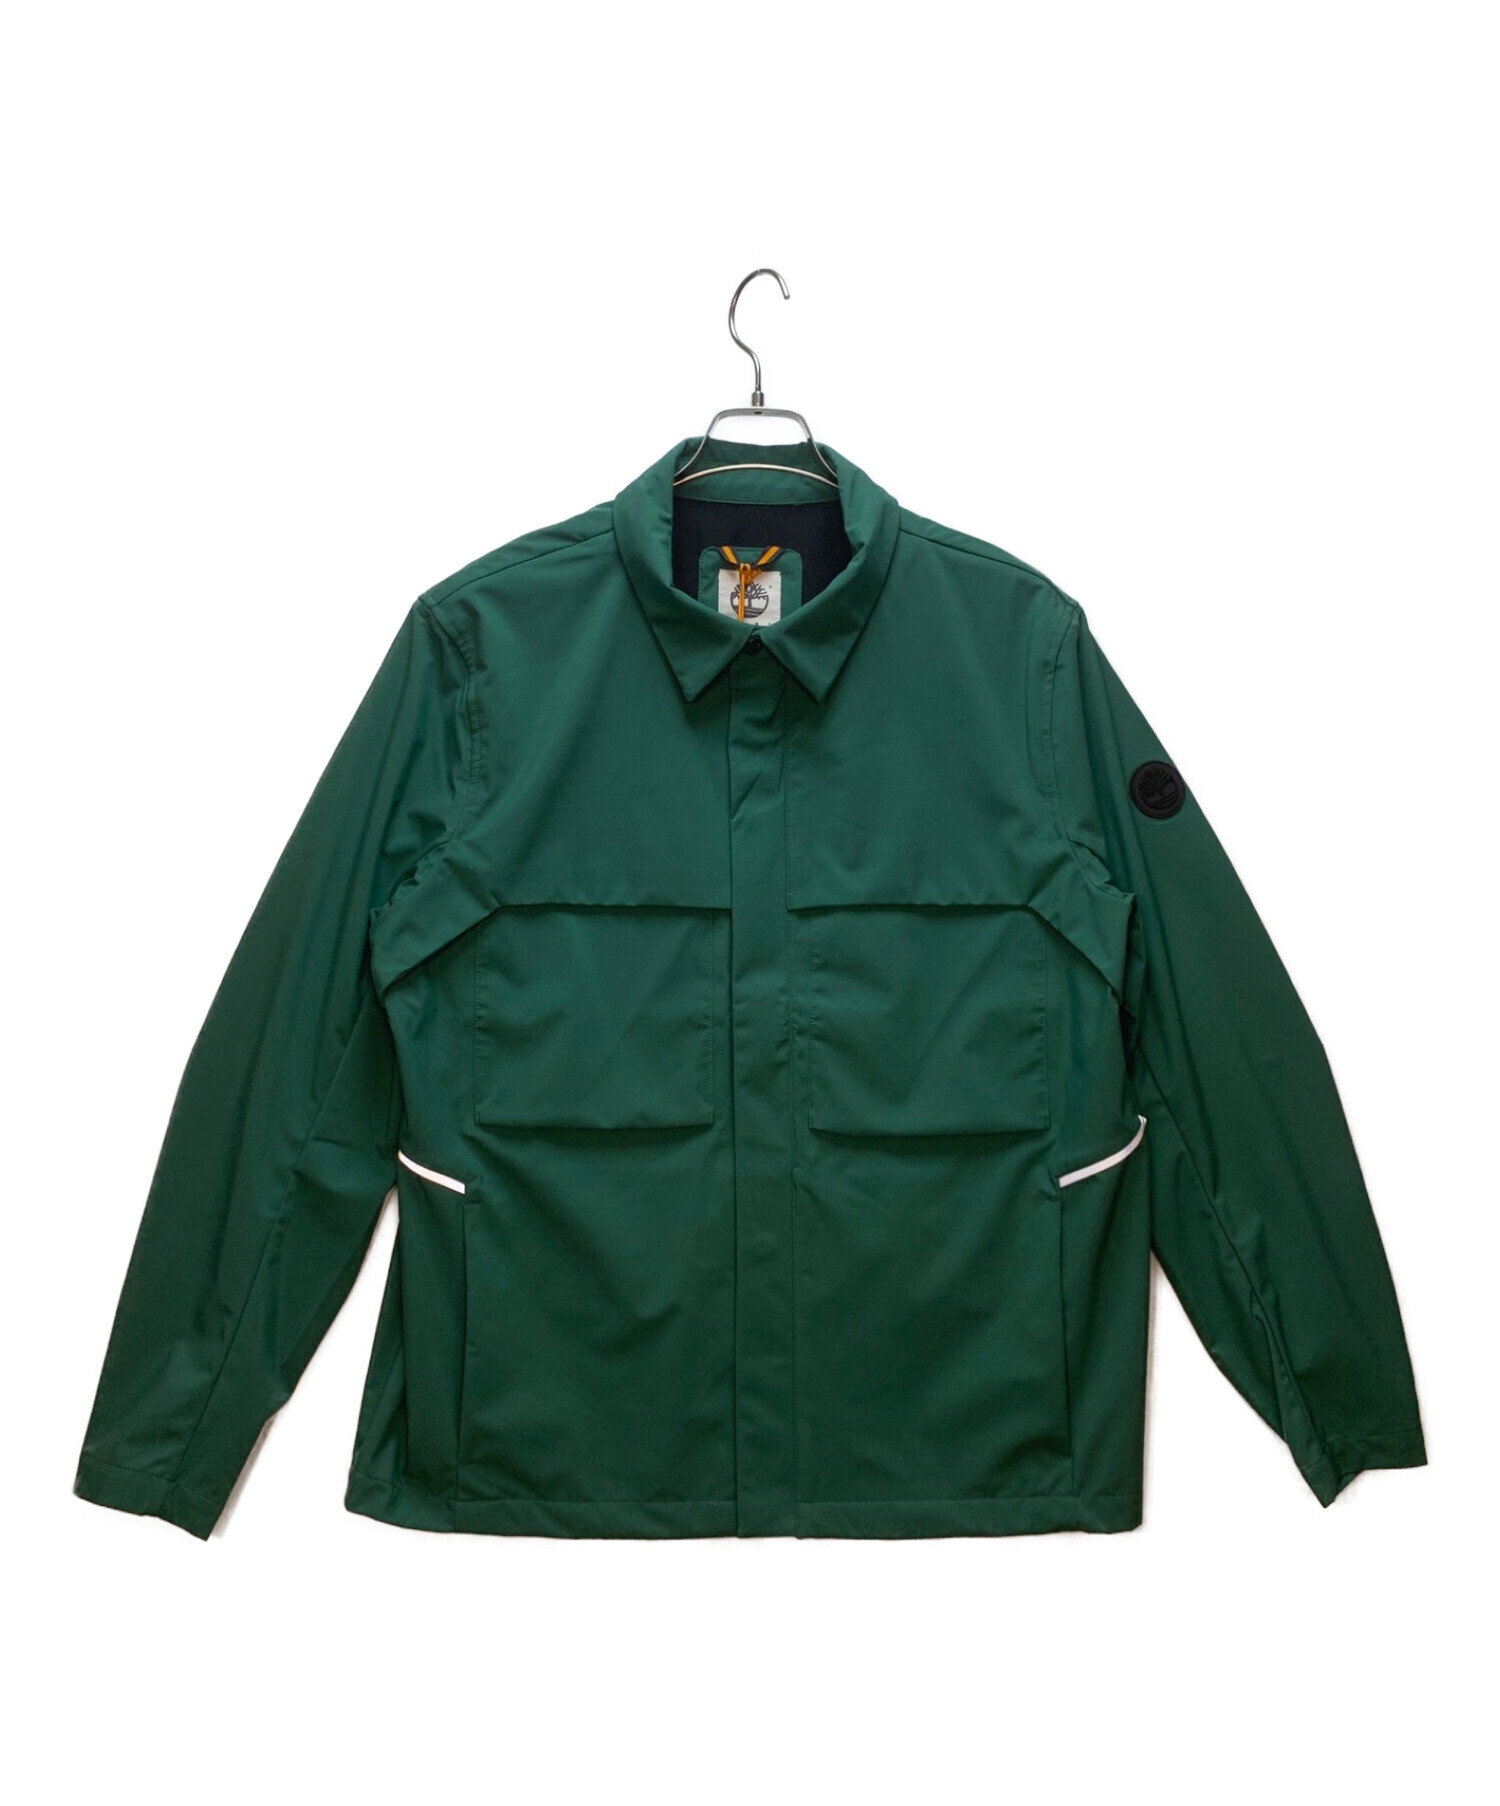 Timberland (ティンバーランド) ジャケット グリーン サイズ:XL 未使用品